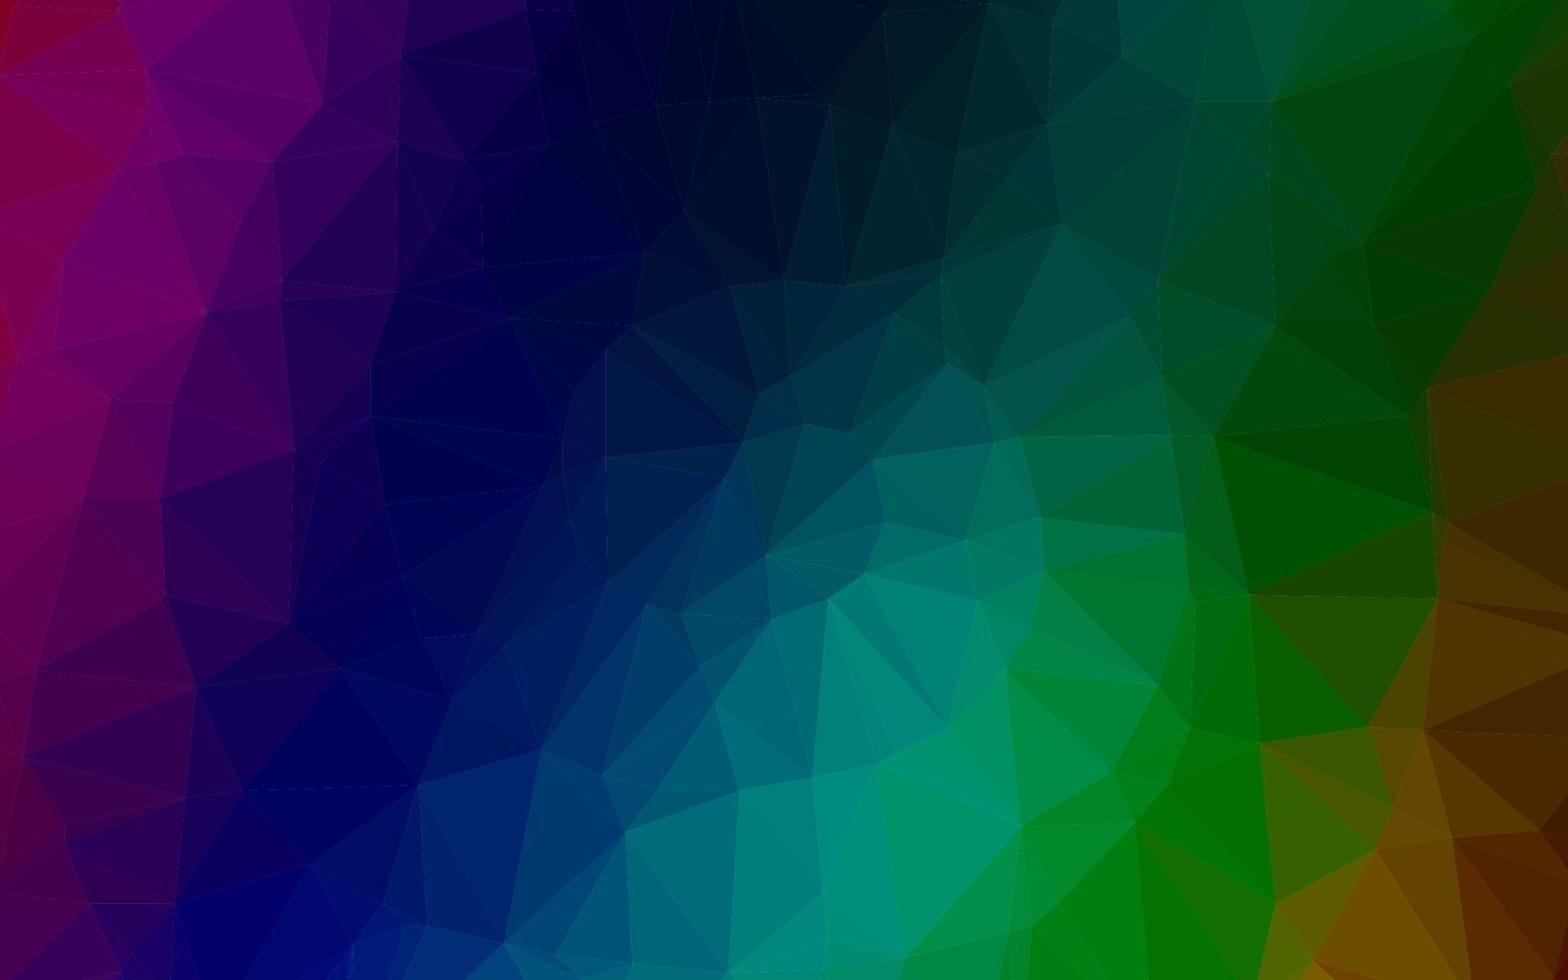 multicolor escuro, fundo poligonal do vetor do arco-íris.